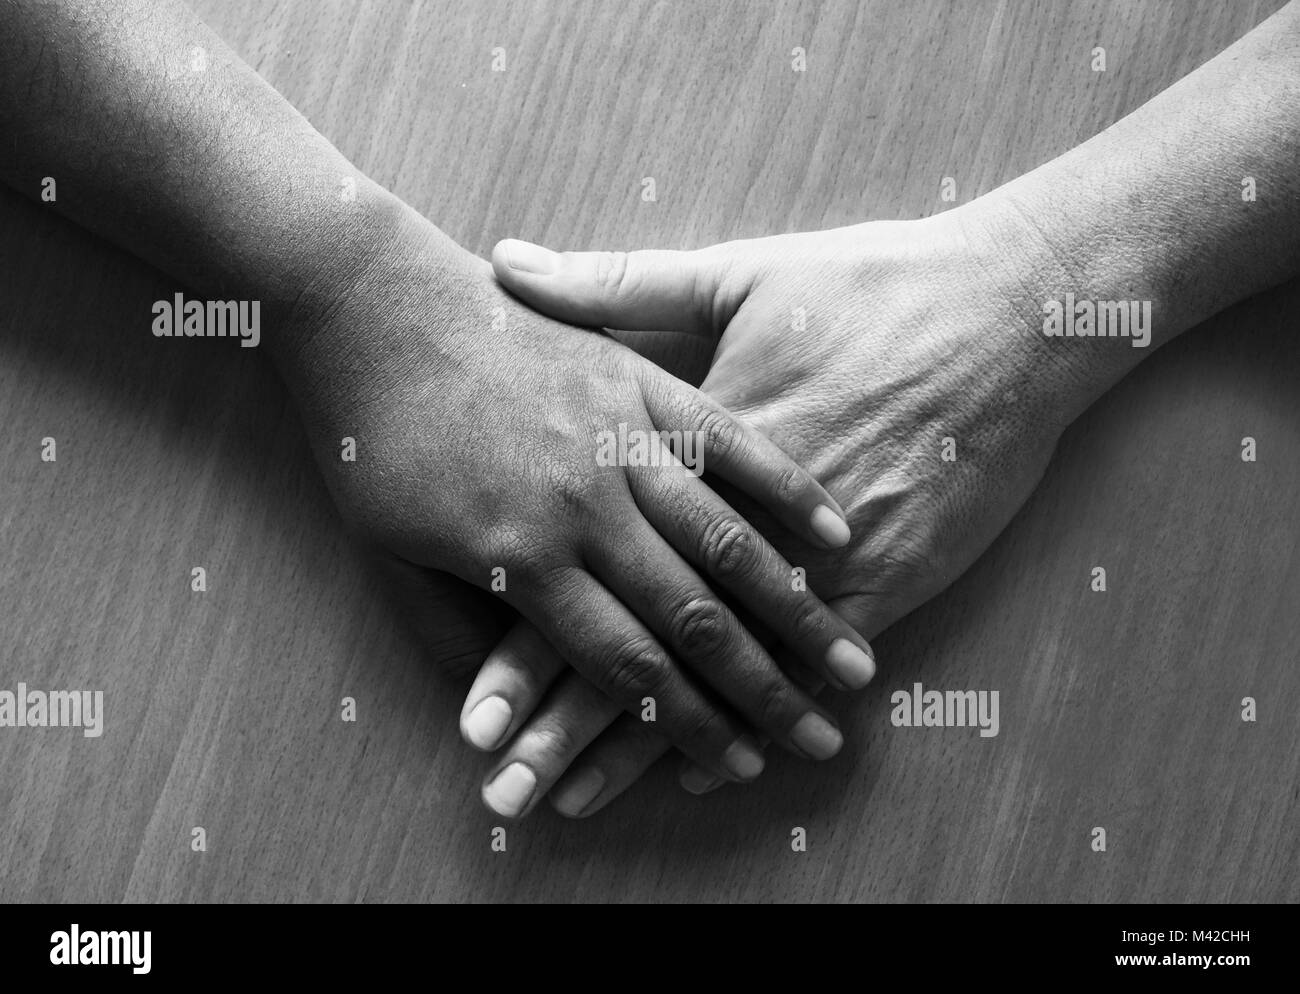 Auf zwei 50 Jahre alte weibliche Hände und Unterarme ontop gelegt, die obere Hand ist der Asiatischen und der unteren Hand ist kaukasisch, bla Stockfoto